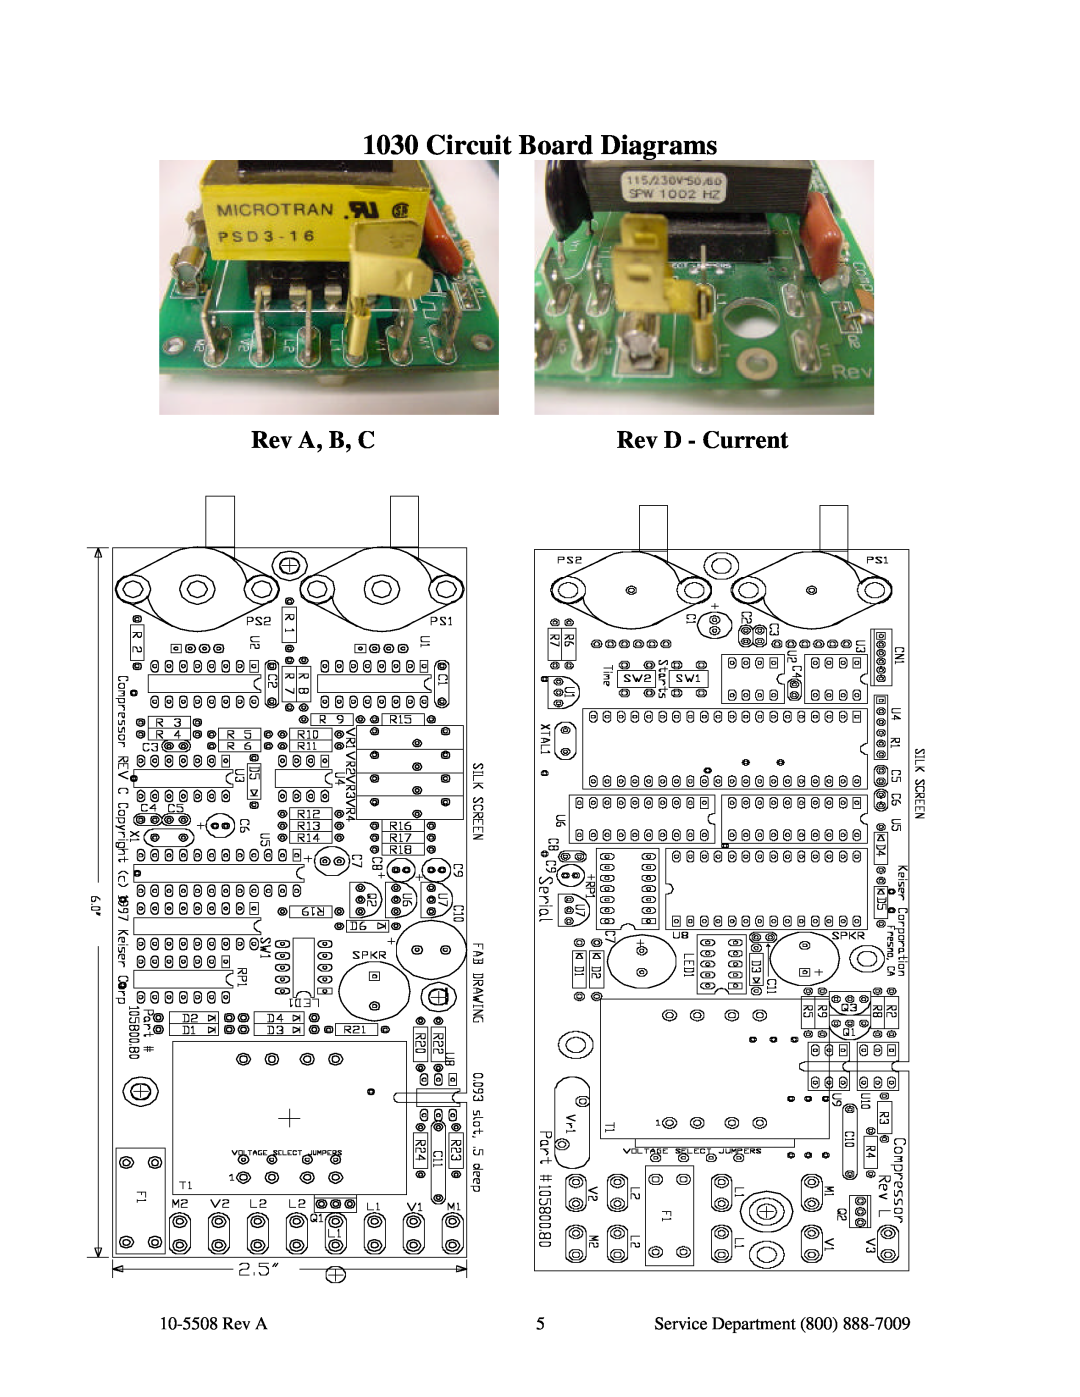 Keiser 1031, 1030 manual Rev A, B, C, Rev D - Current, Circuit Board Diagrams, Service Department 800 